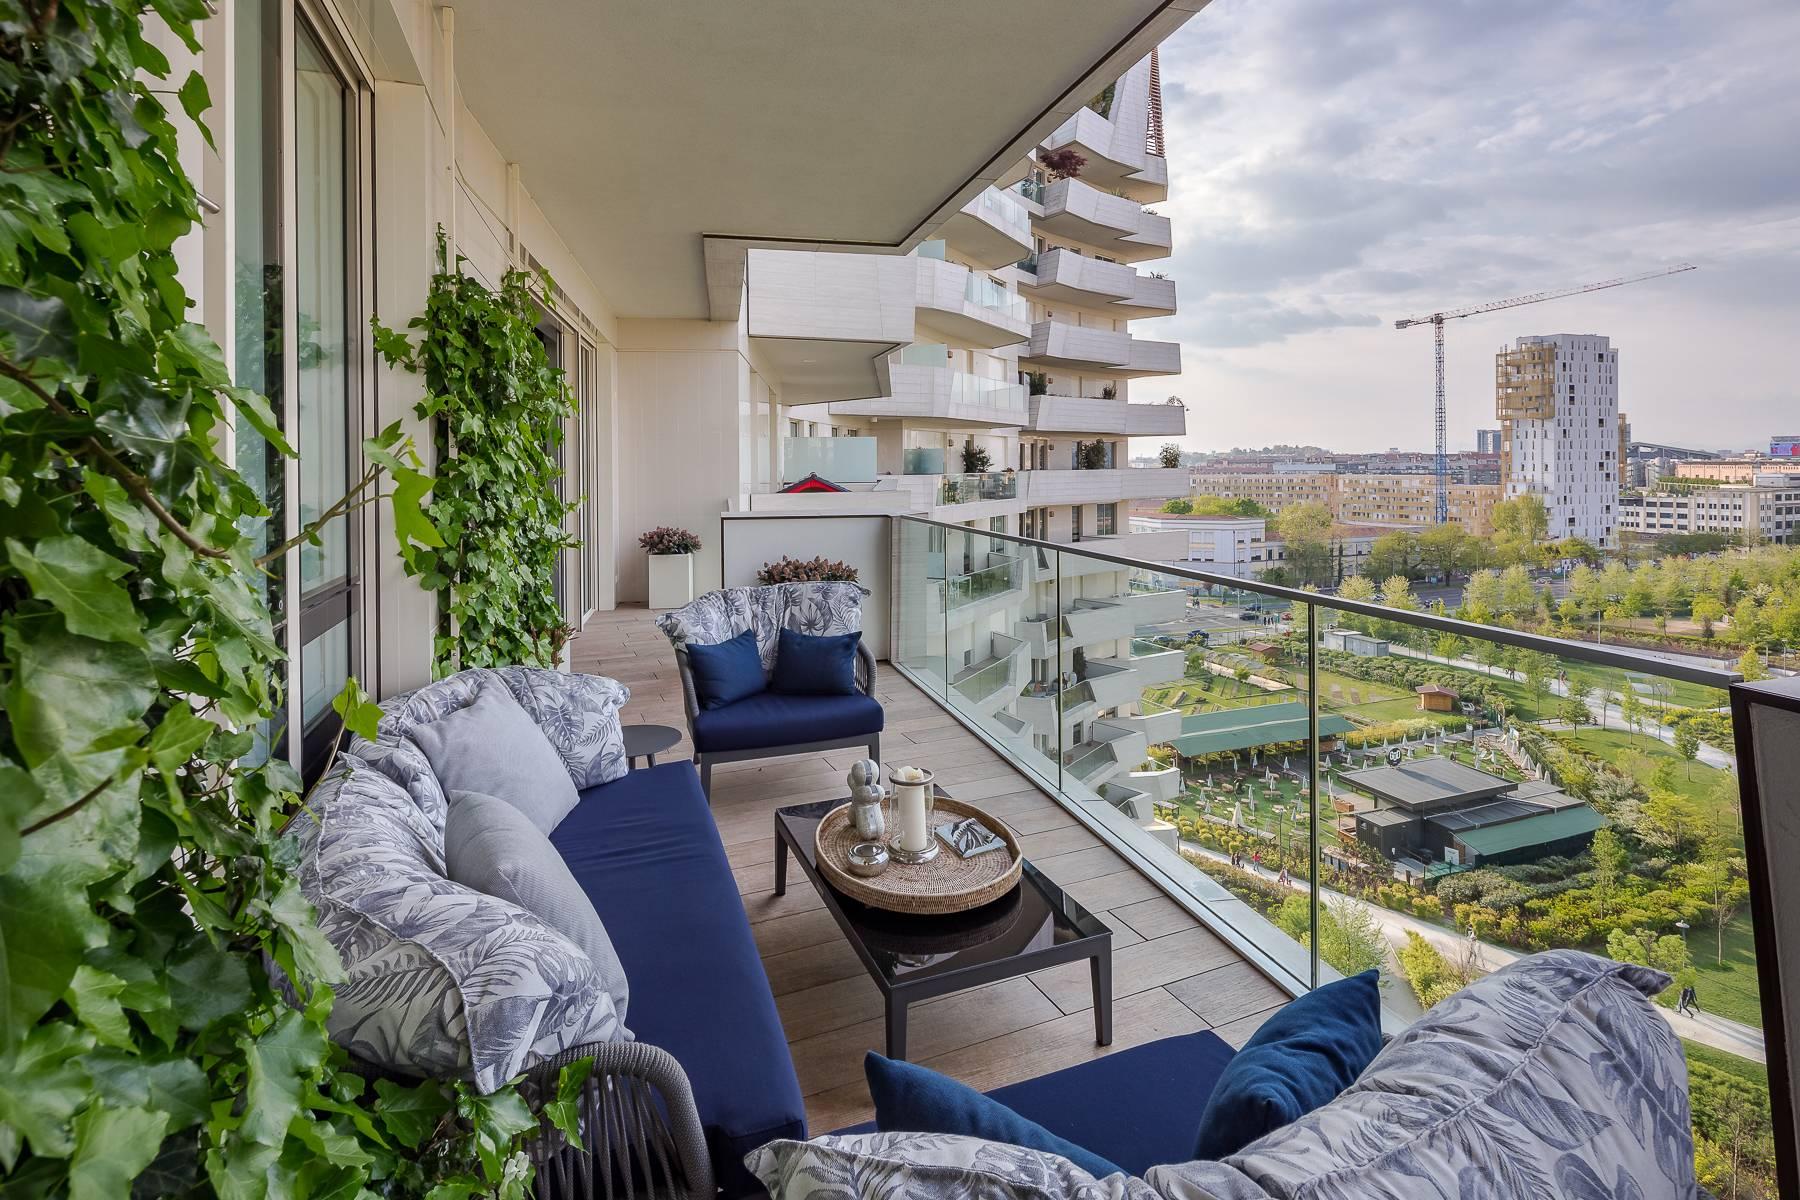 Wunderschöne möblierte Design-Wohnung mit Terrassen im CitylIfe Stadtviertel - 41